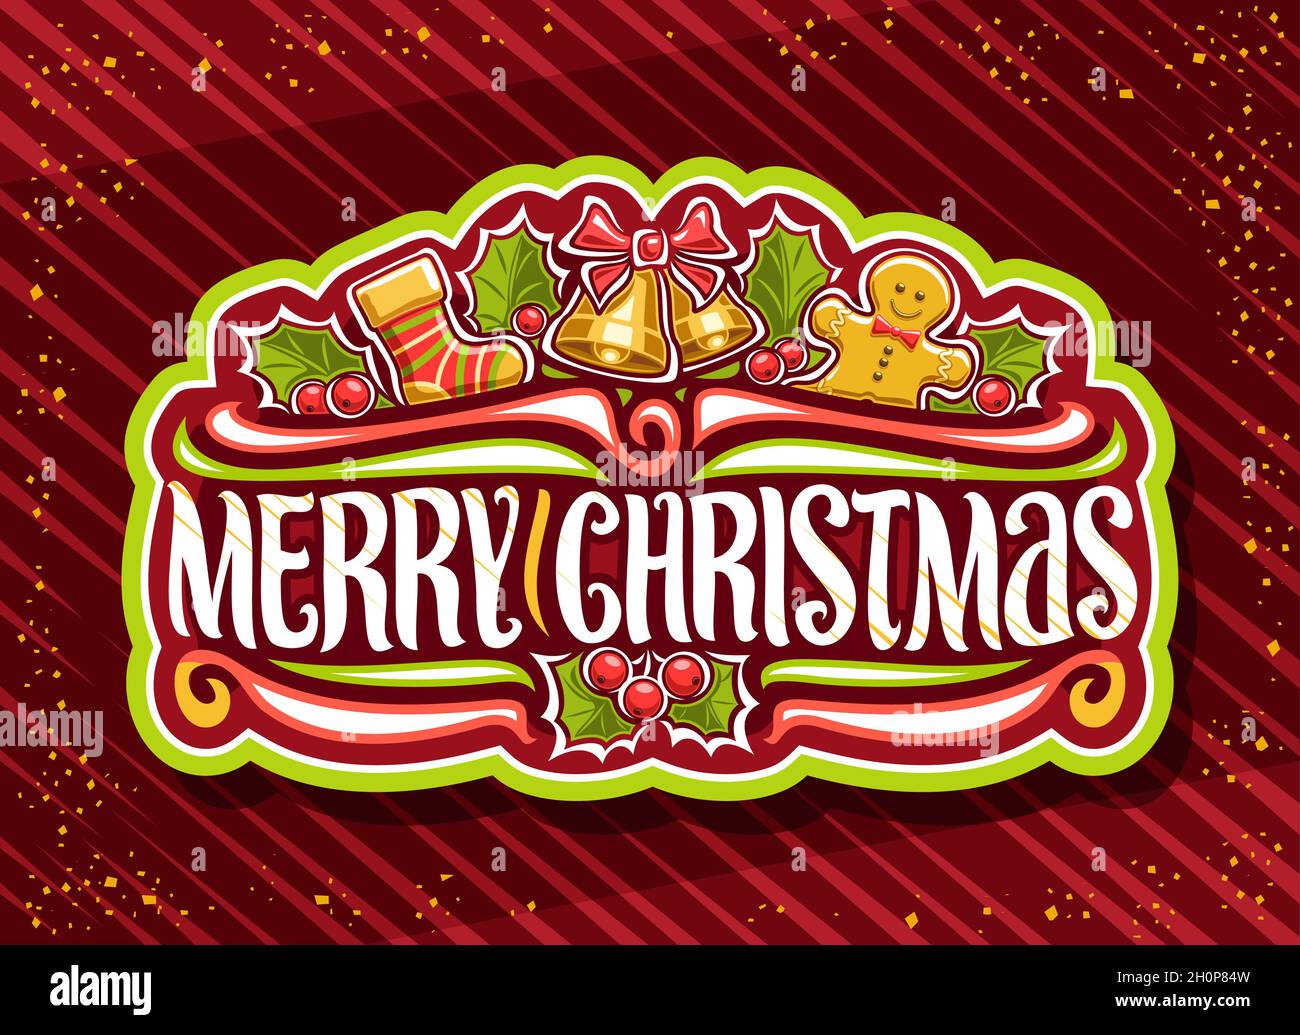 Logotipo vectorial para las felices fiestas de Navidad, insignia decorativa verde con ilustración de calcetín para niños, campanas doradas con lazo, pan de jengibre lindo, diseño de dibujos animados Ilustración del Vector